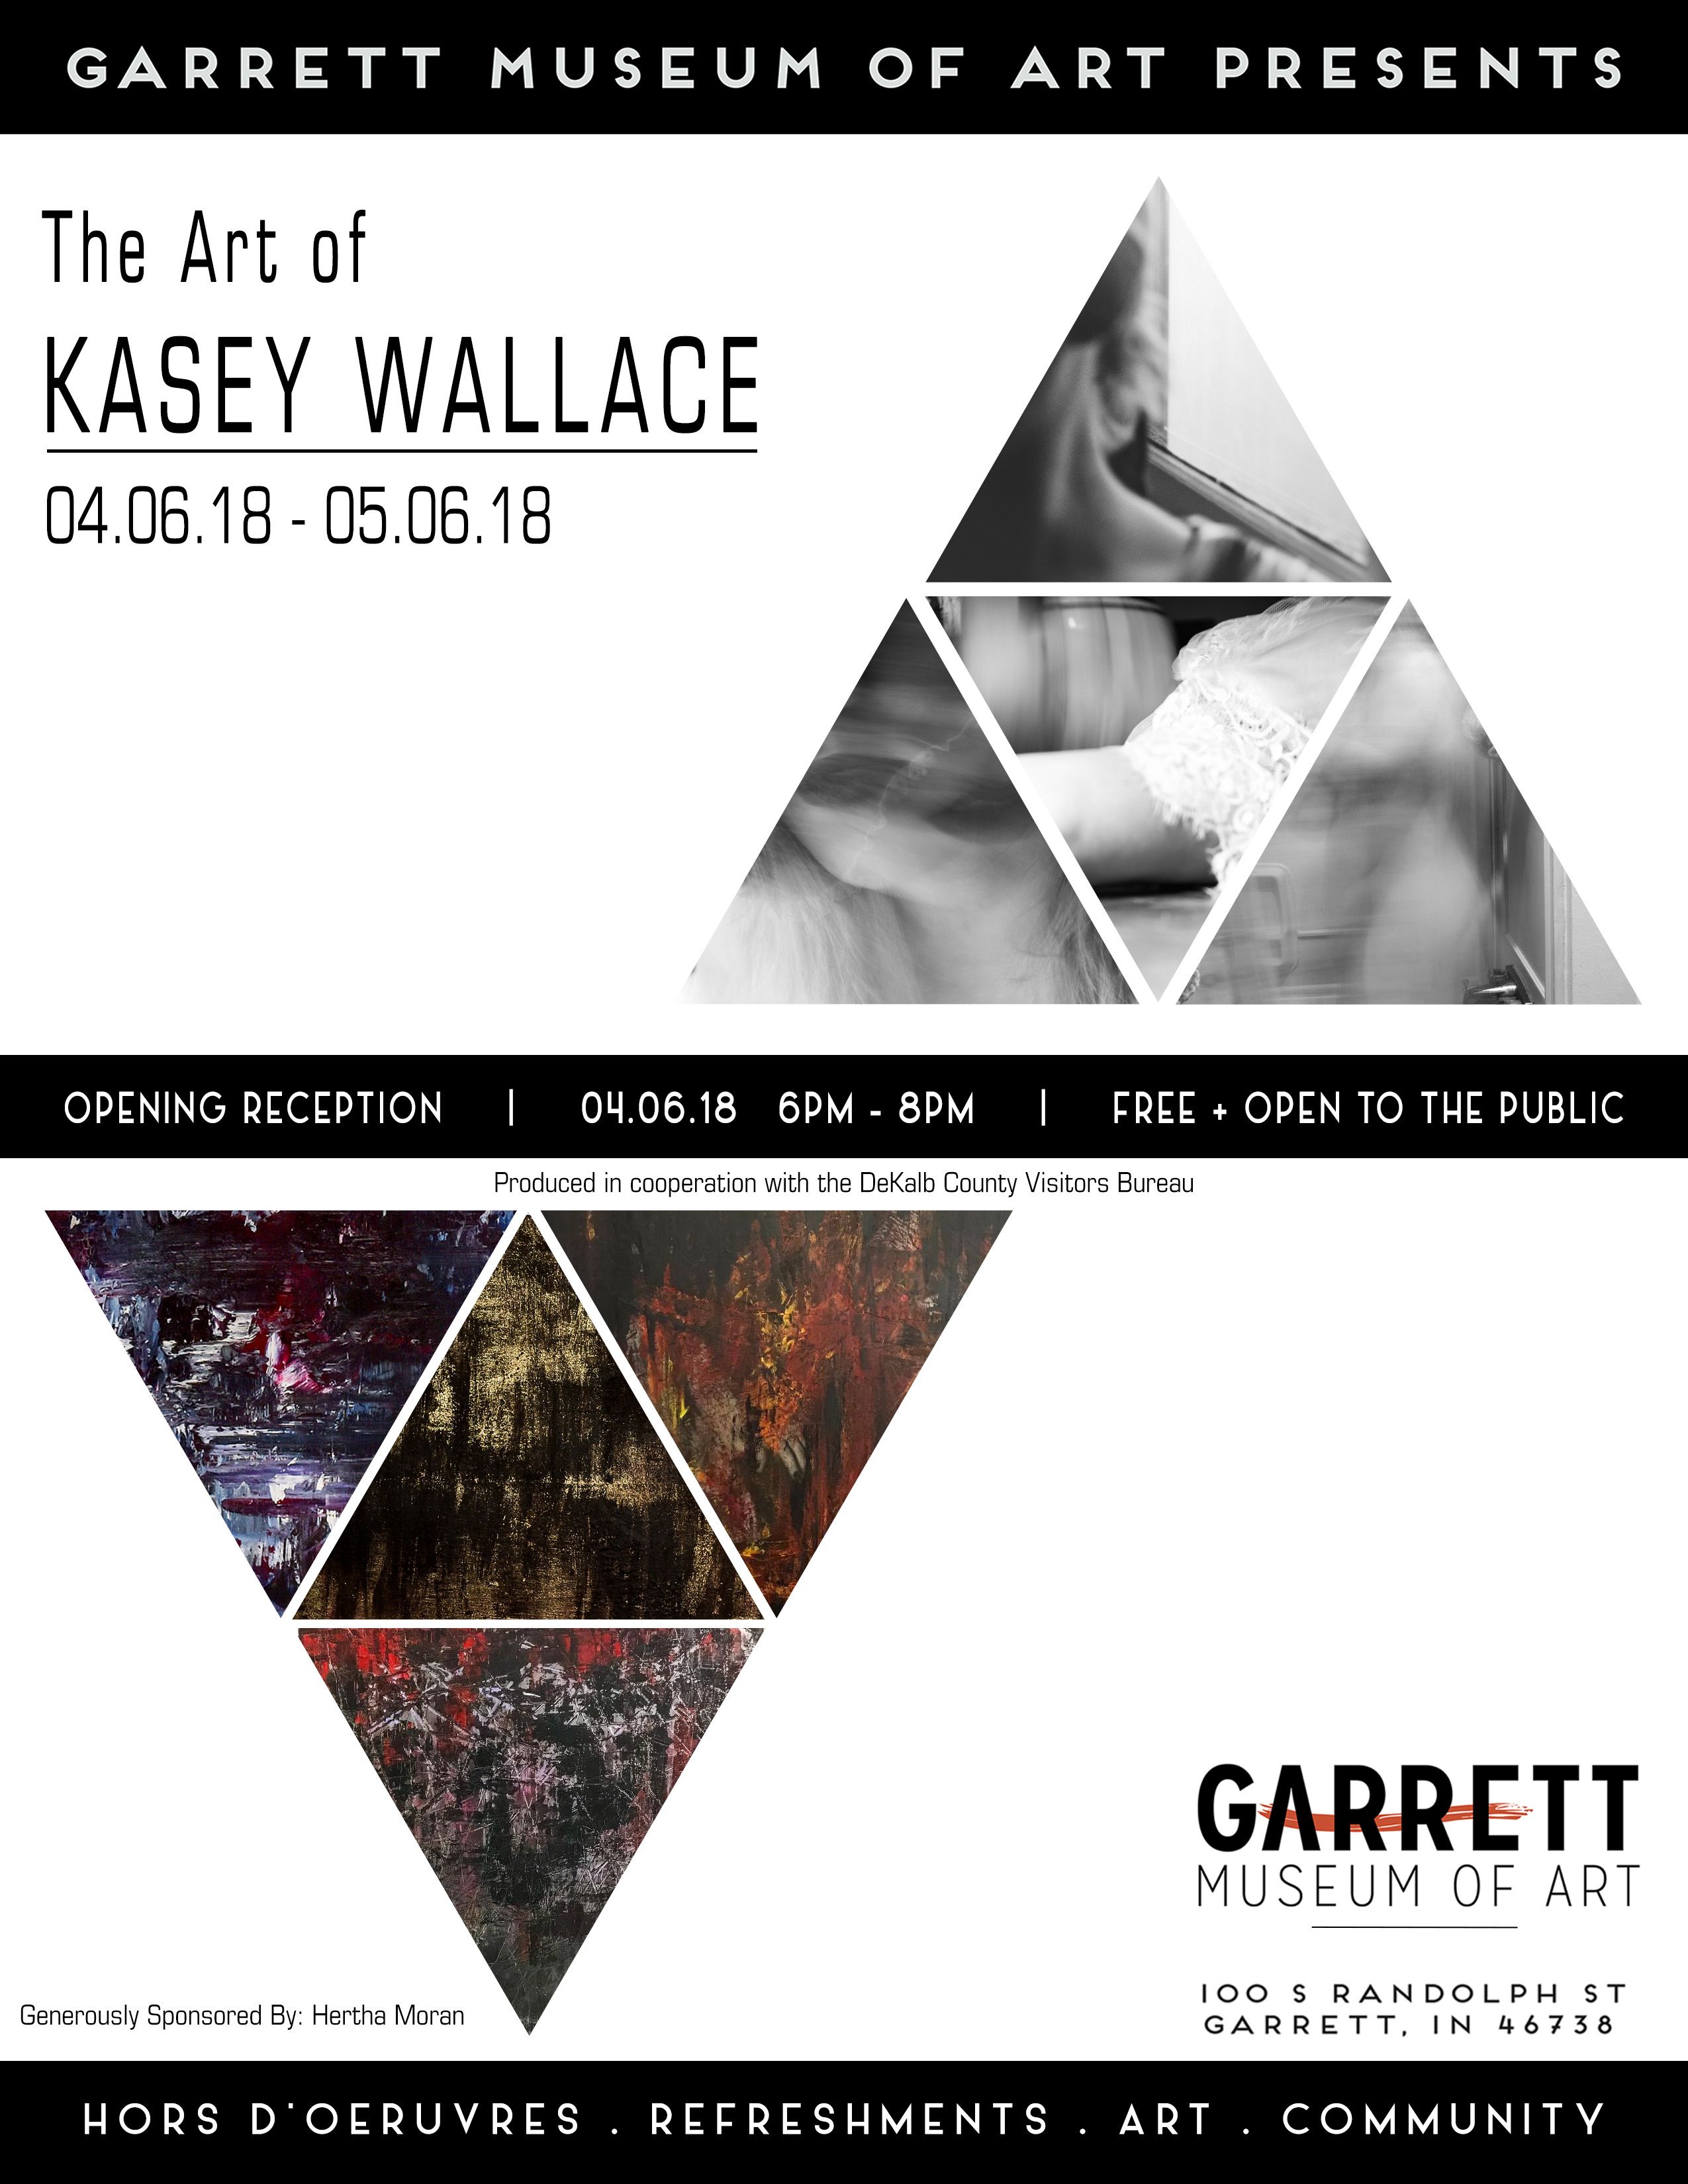 The Art of Kasey Wallace - www.kaseywallaceart.com